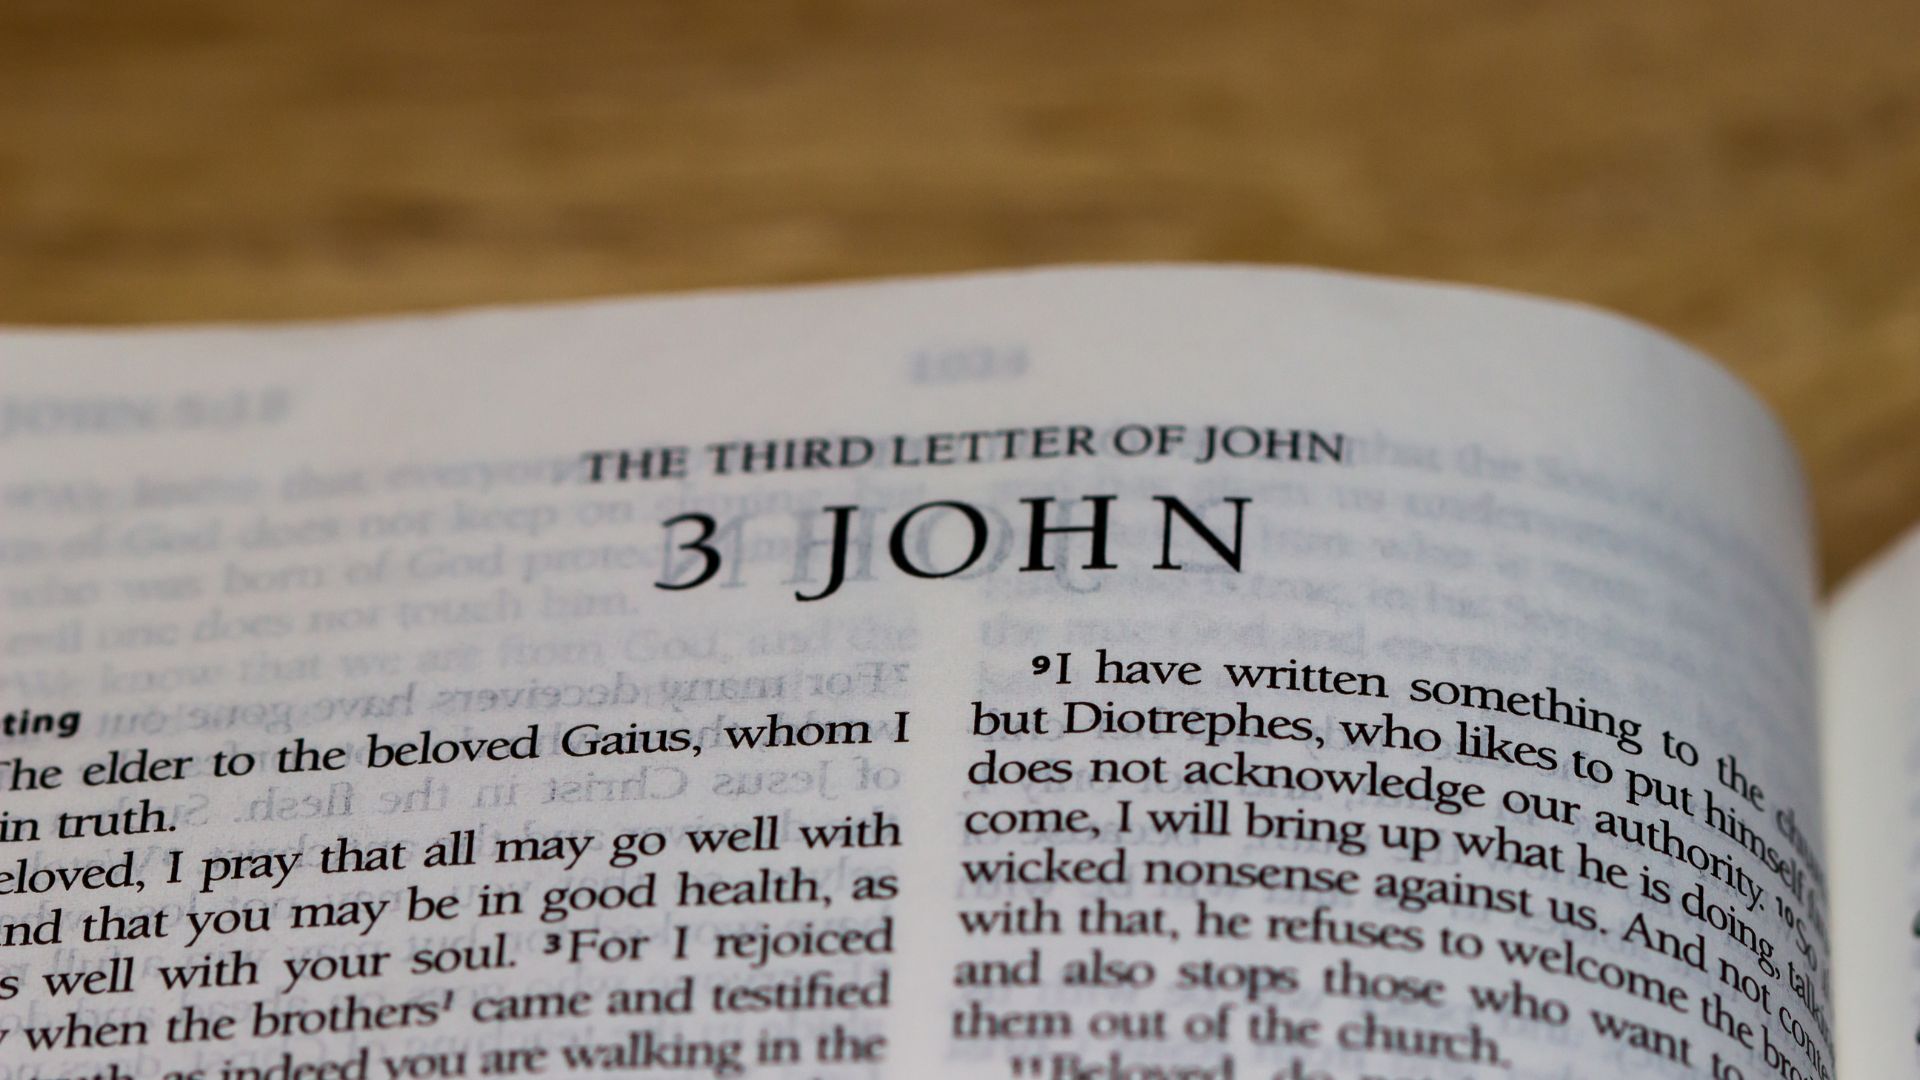 Bíblia aberta no Livro de III João